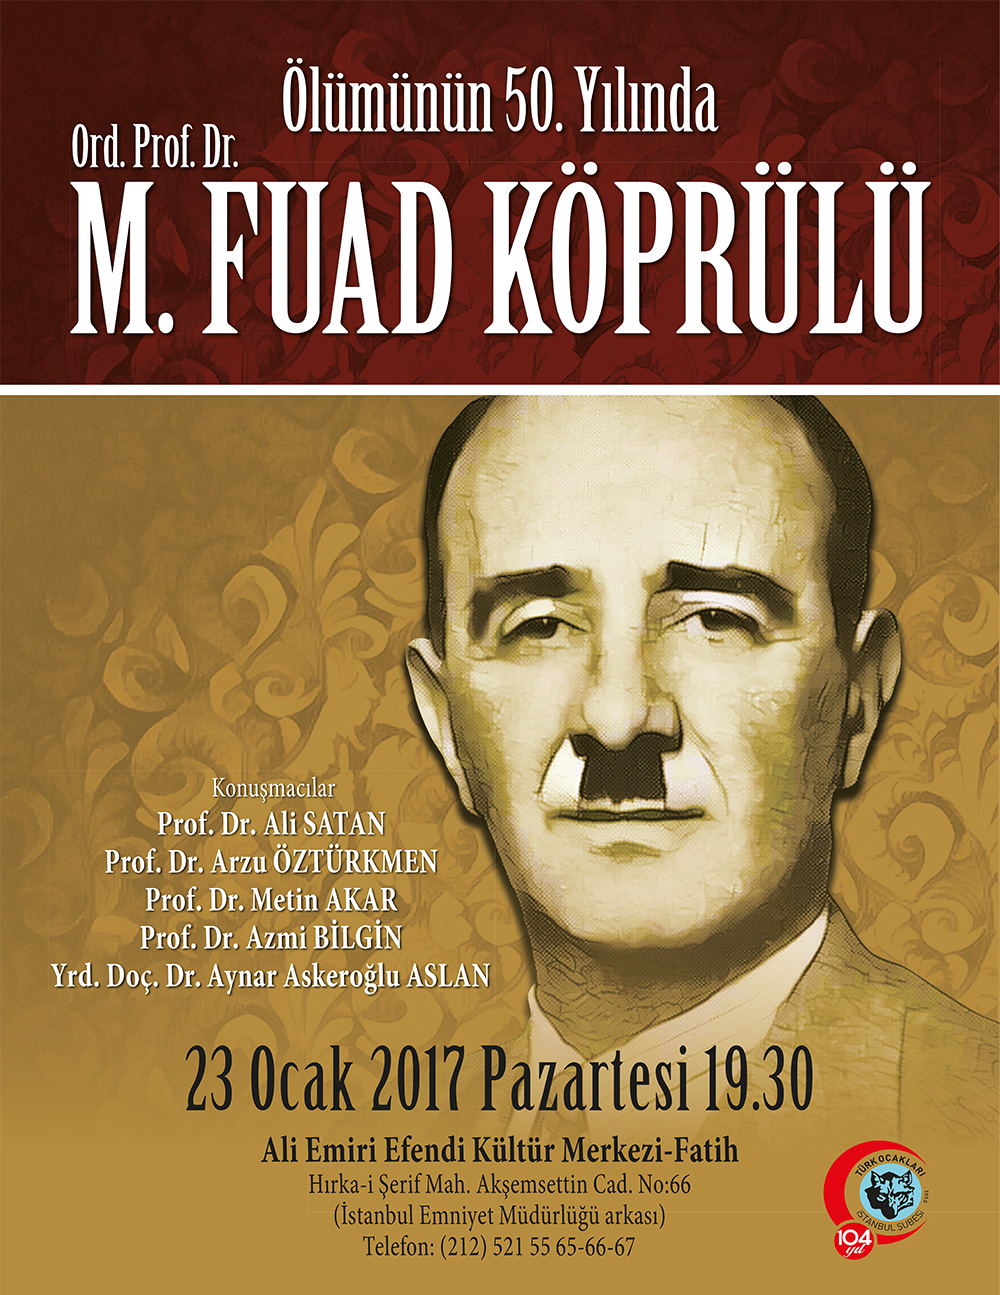 Ölümünün 50. Yılında Ord. Prof. Dr. Fuat Köprülü